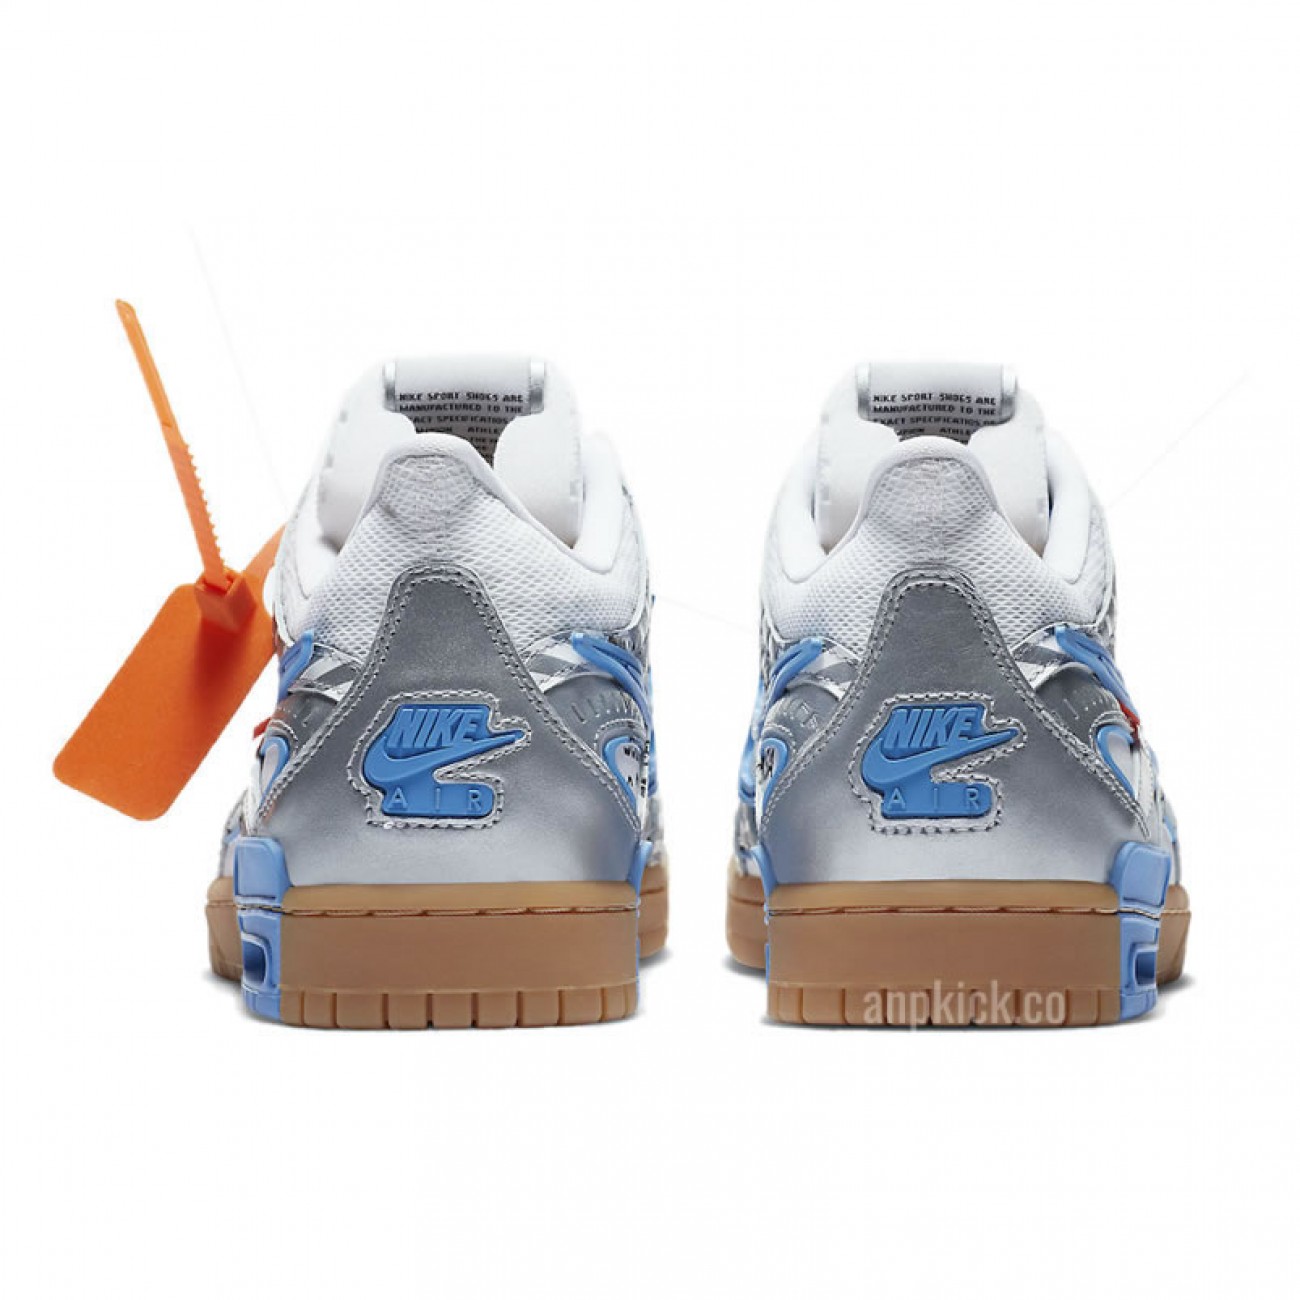 OFF-WHITE x Nike Air Rubber Dunk "University Blue" Release Date CU6015-100